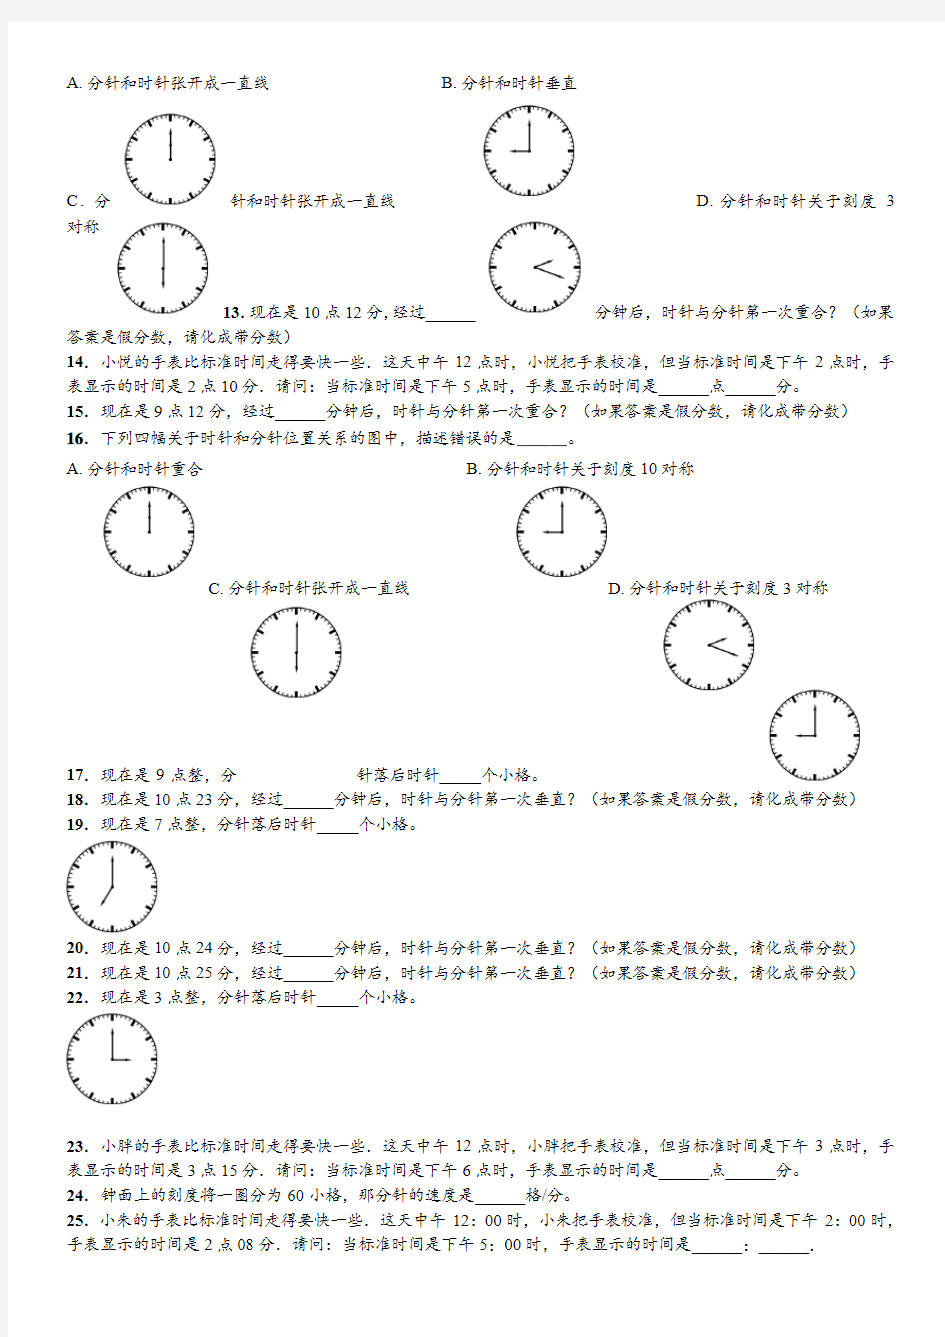 钟表行程问题60题(行测可学)